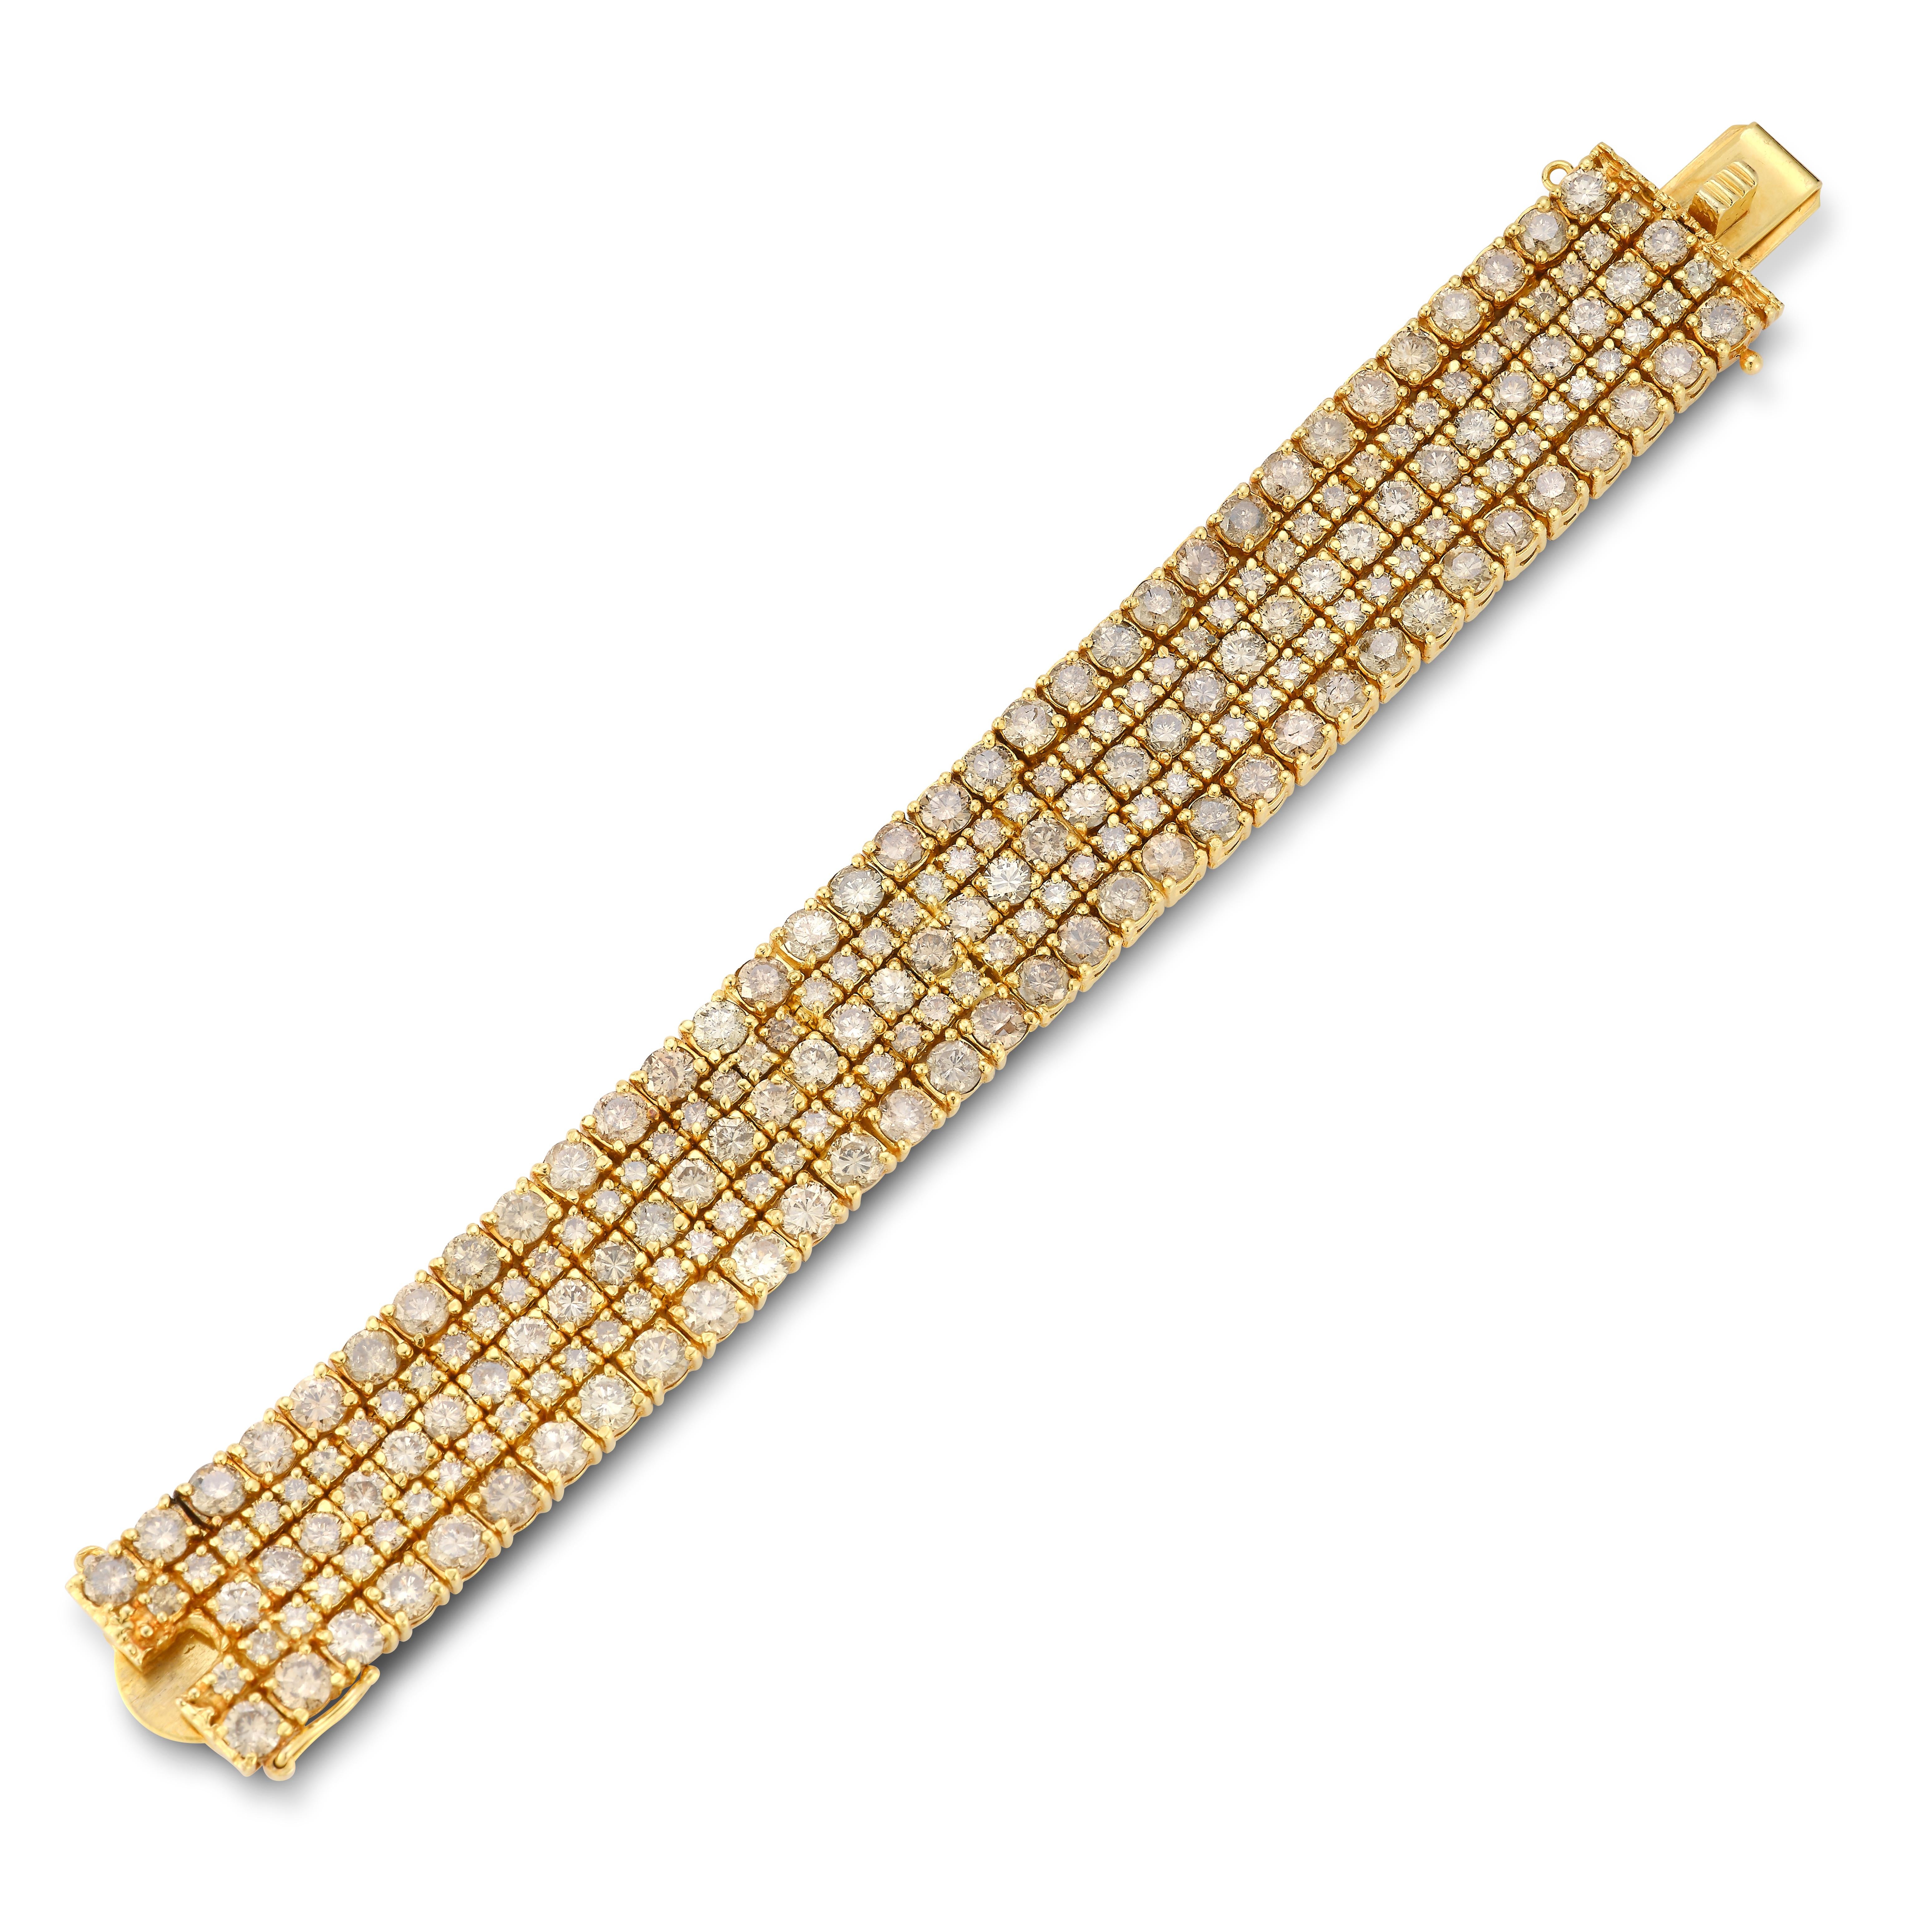 Diamant-Armband für Männer 

Ungefähr 41,40 Karat Diamanten

Hergestellt ca. 1970

6 3/4 Zoll lang

14 Karat Gelbgold